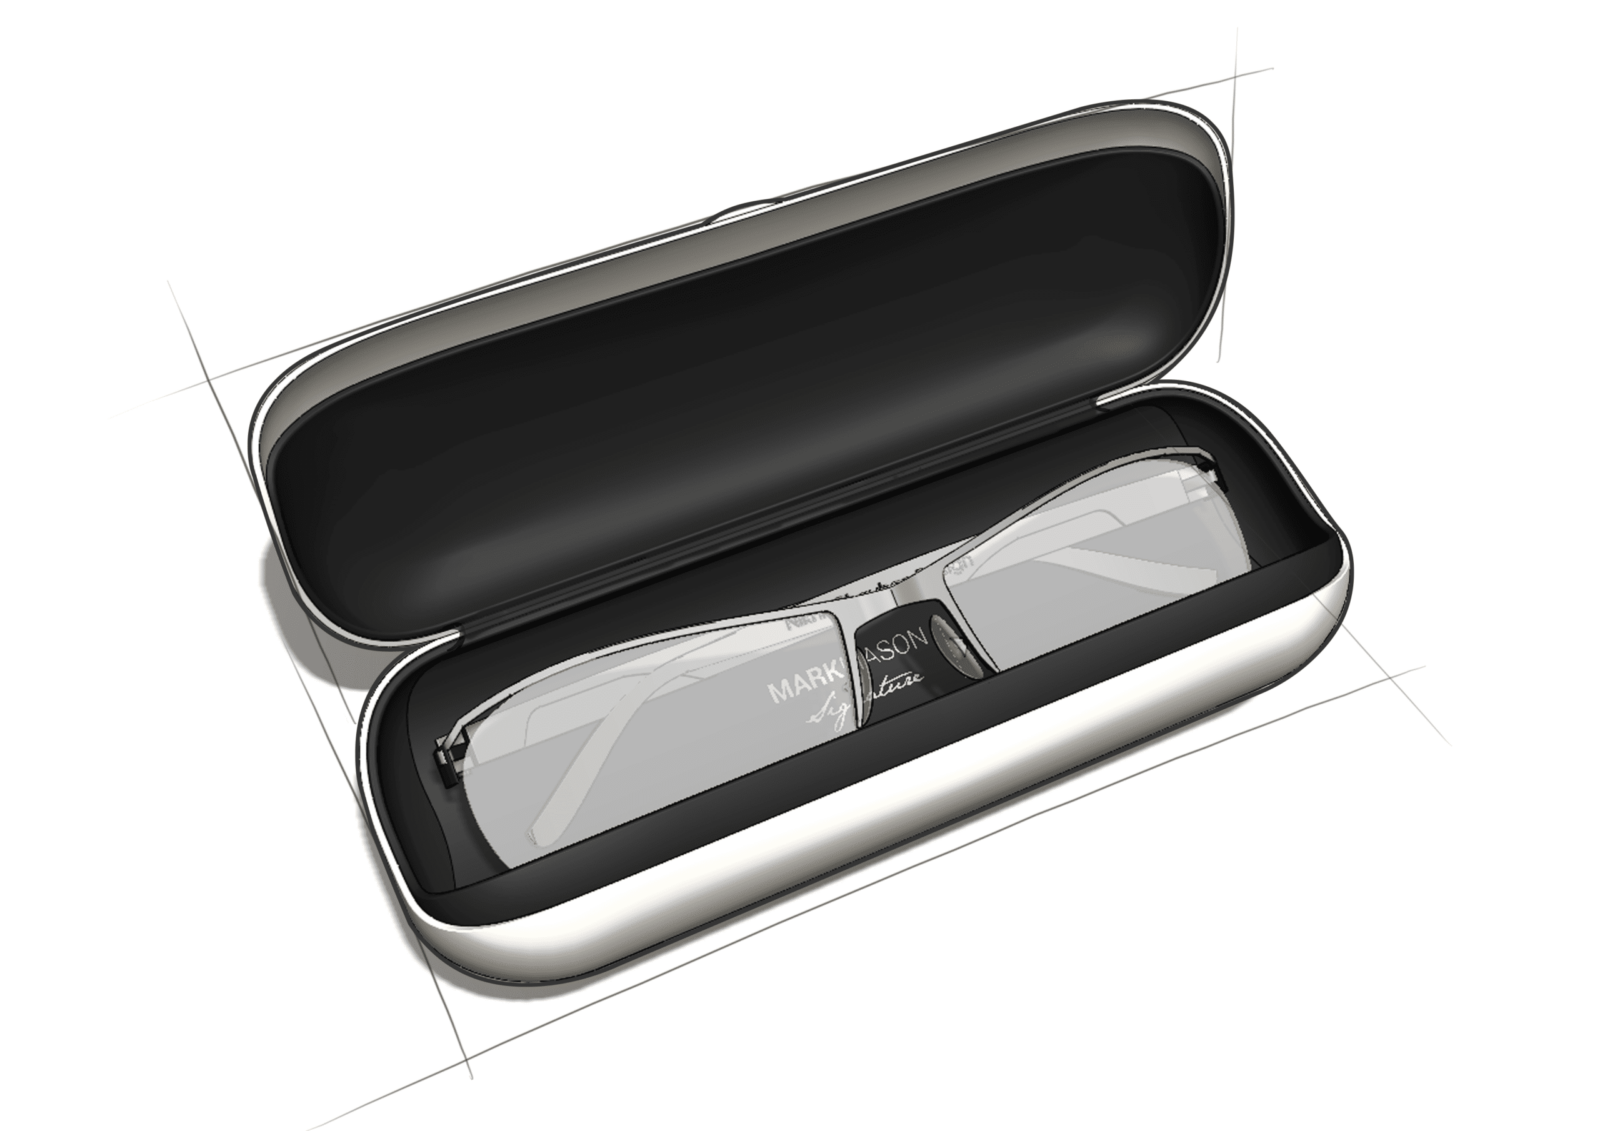 Concept development for a silver glasses case